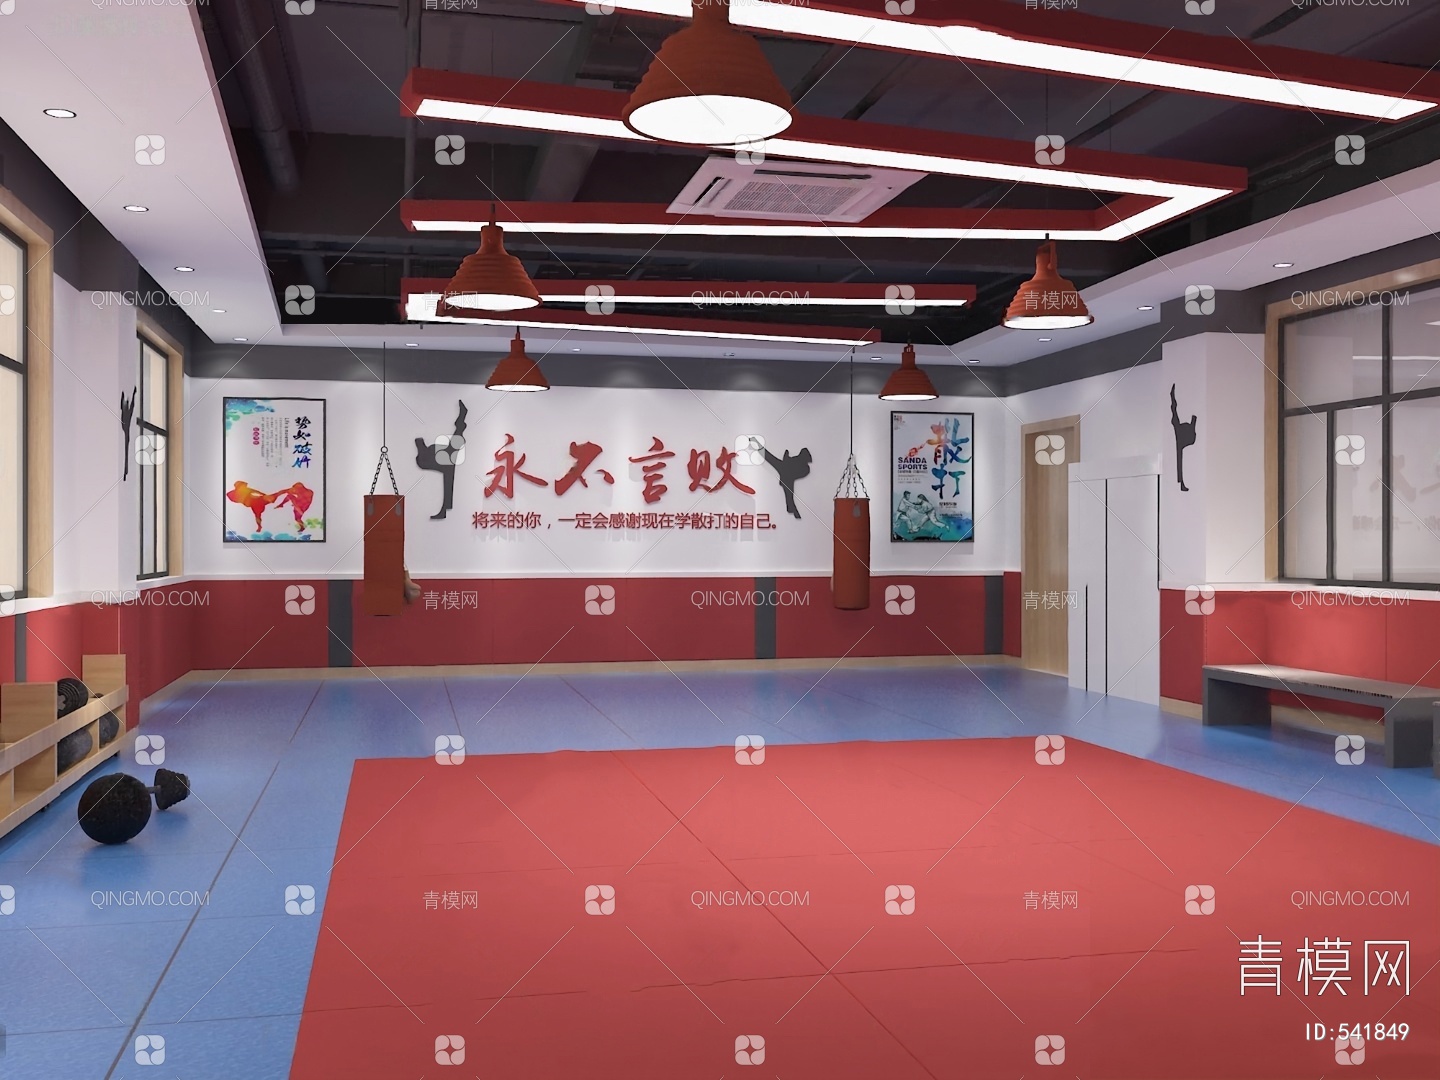 弘武道-中国跆拳道运动协会官方网站